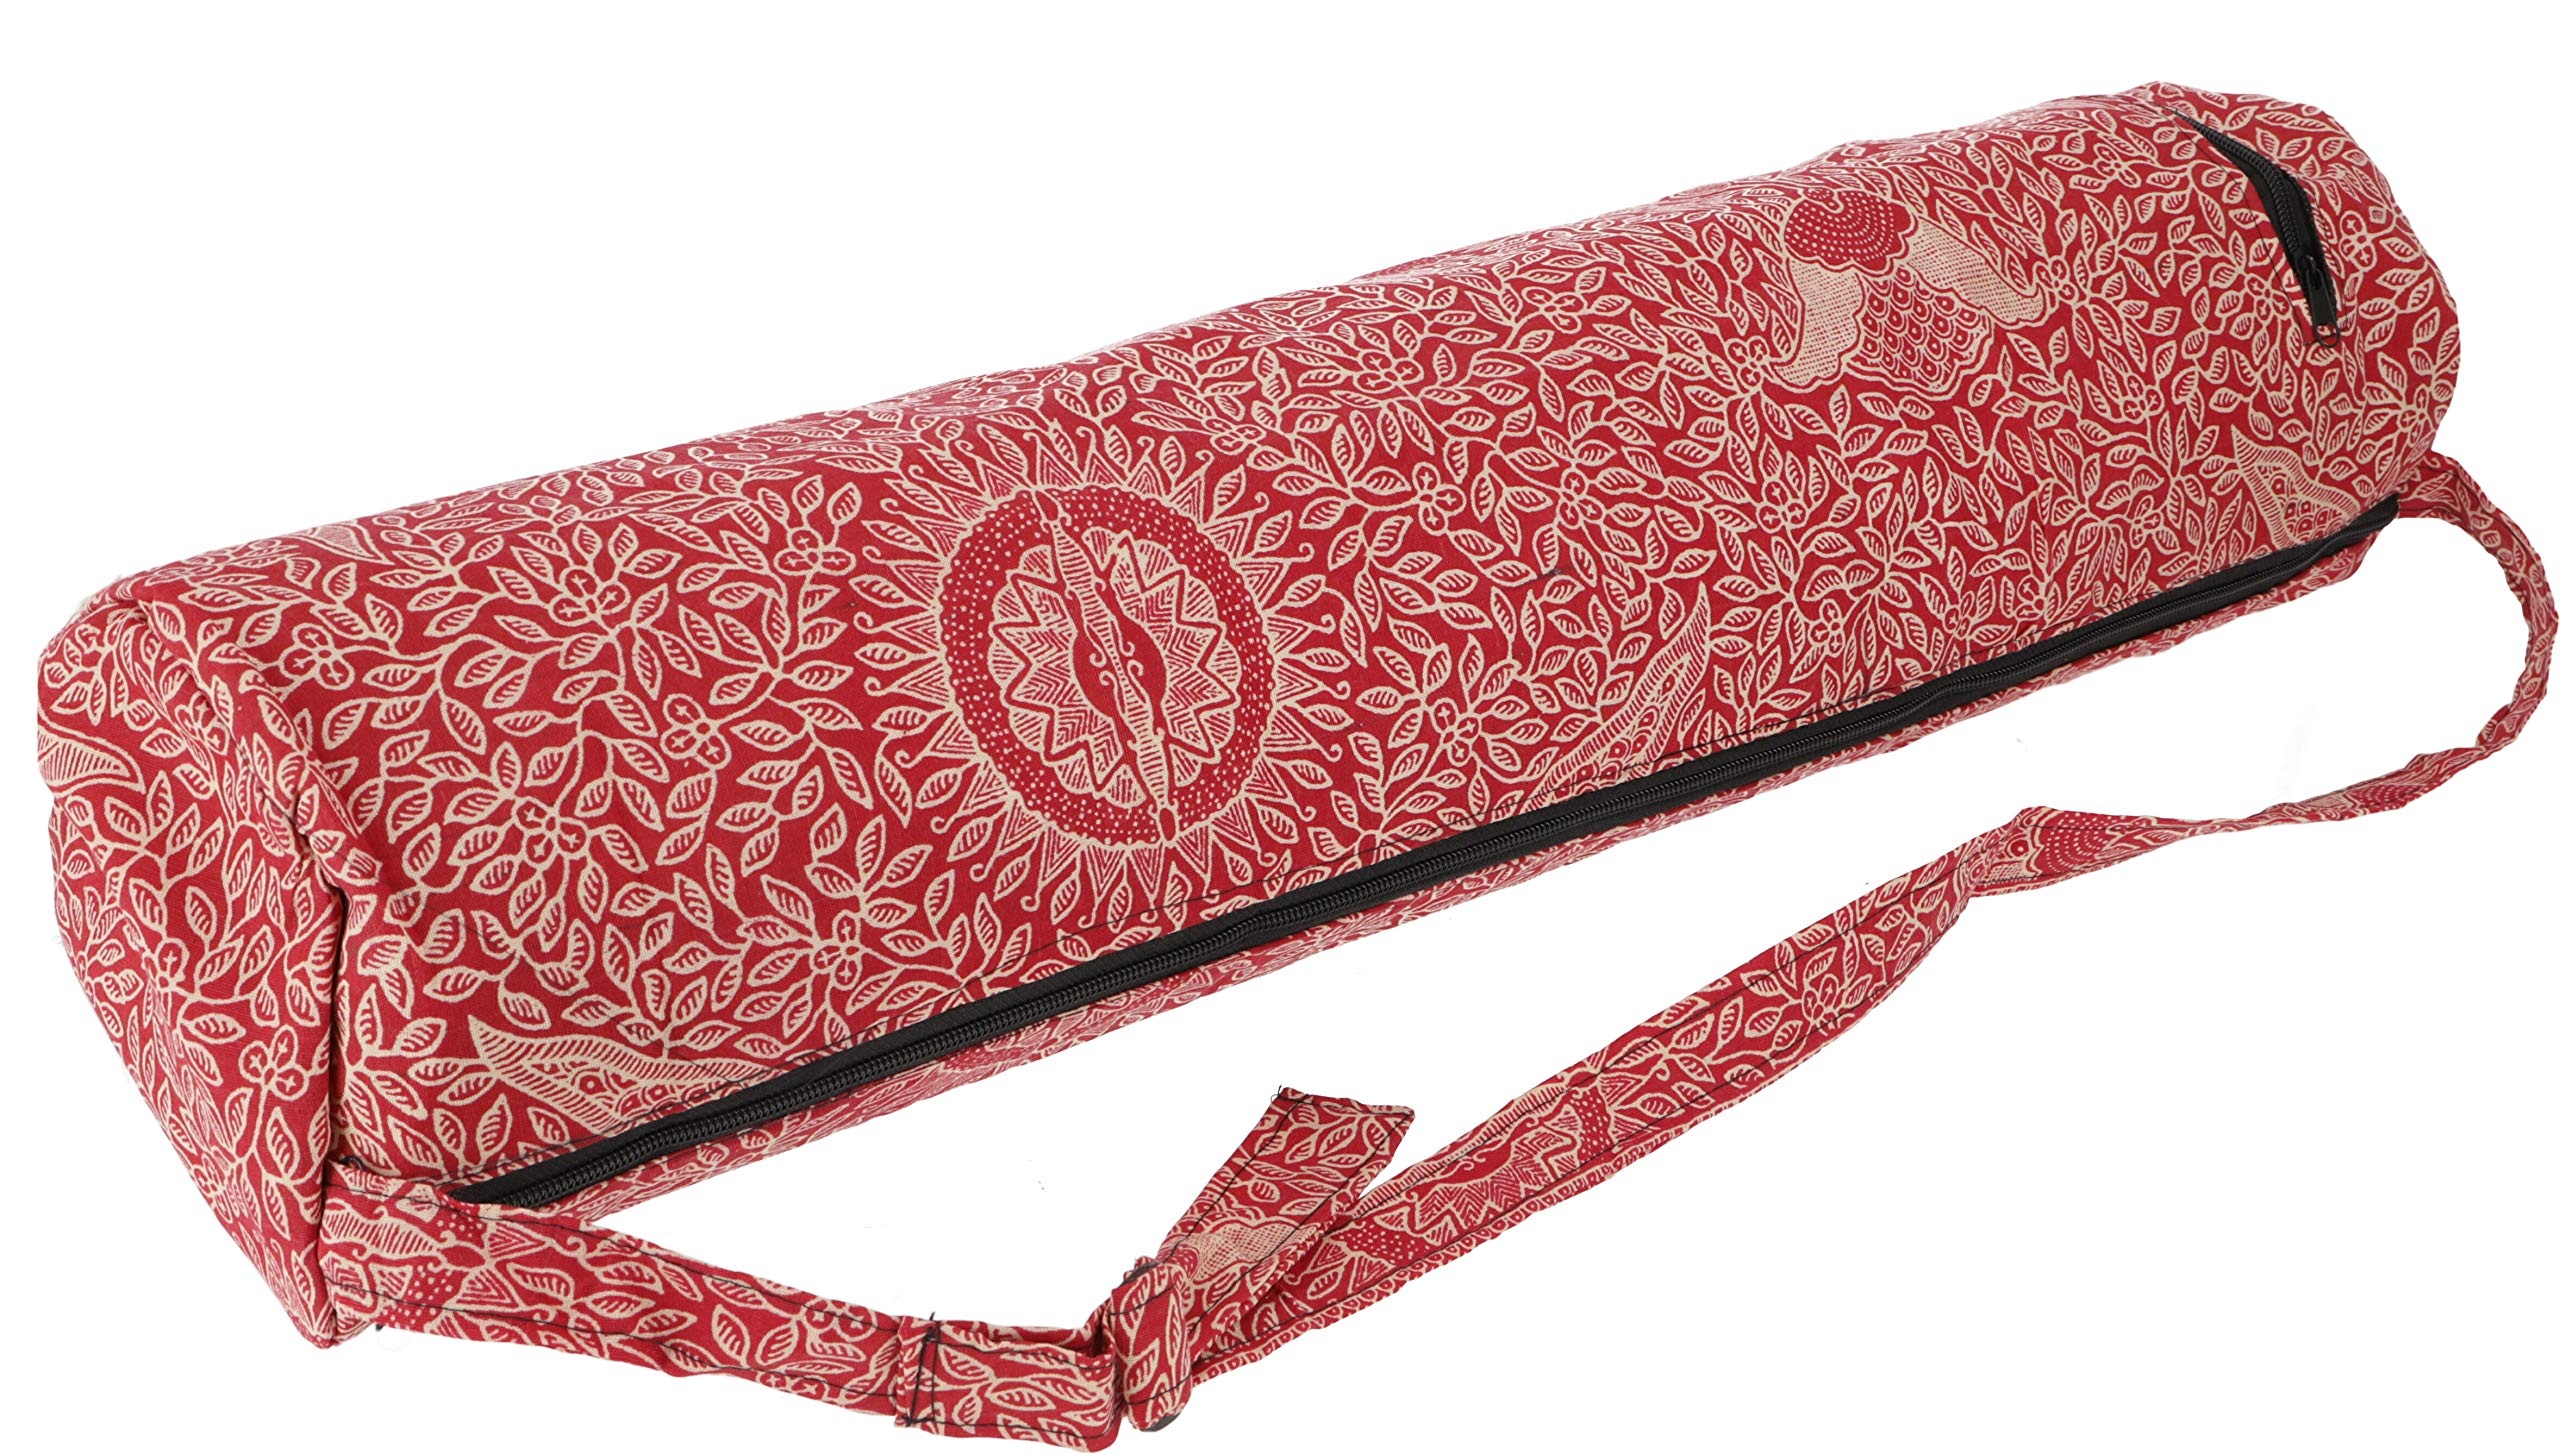 GURU SHOP Yogamatten-Tasche Indonesische Batik - Rot, Herren/Damen, Baumwolle, Size:One Size, 65x20x20 cm, Taschen für Yogamatten - Einheitsgröße